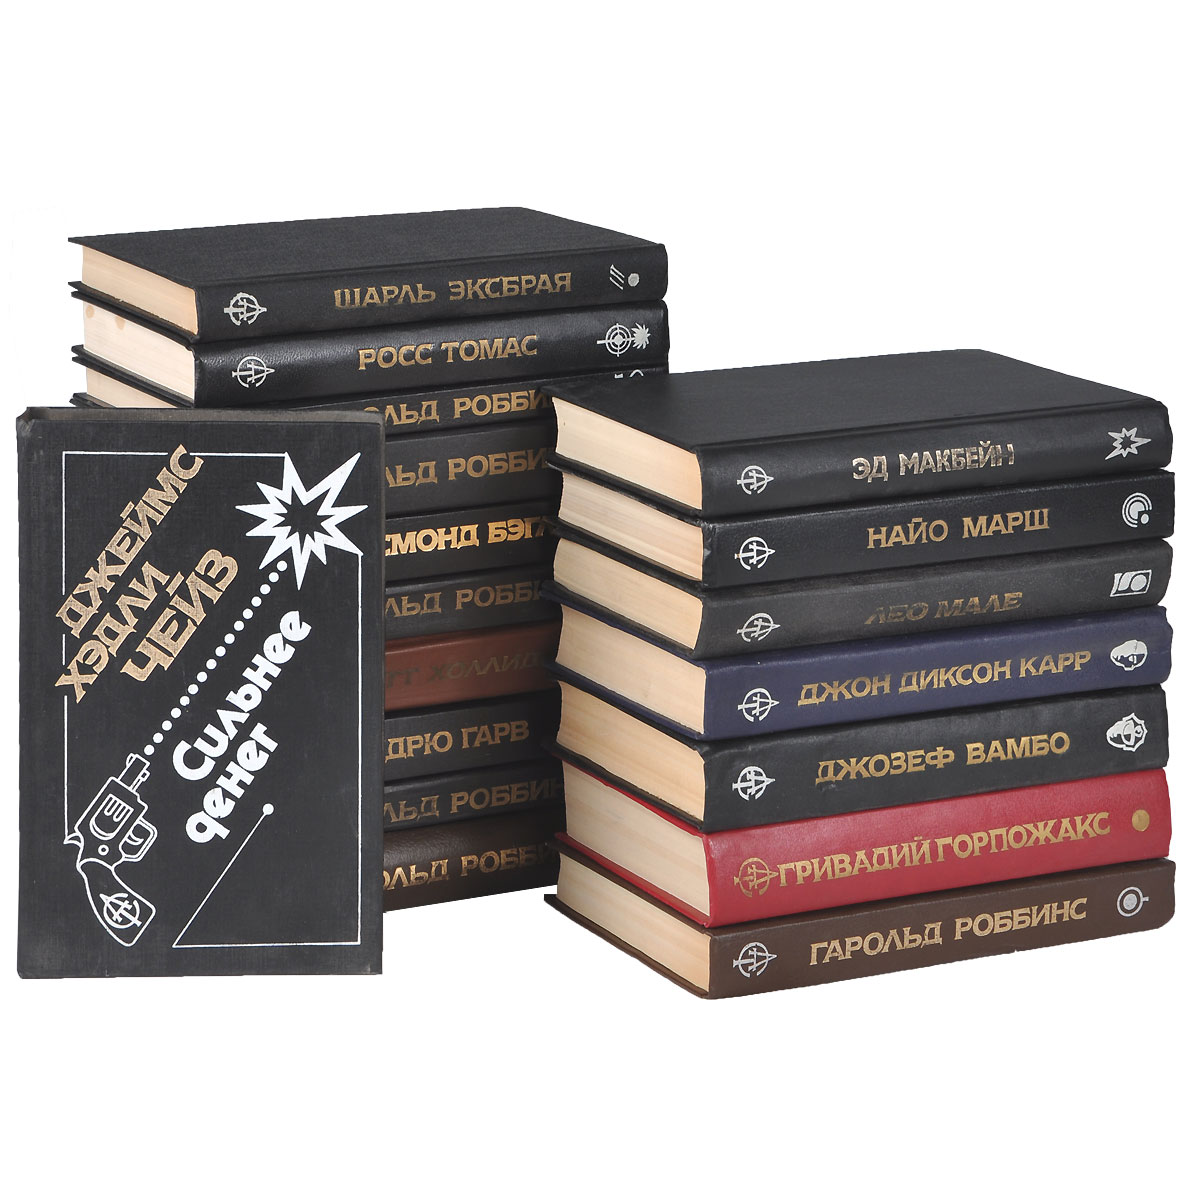 Зарубежные детективы от издательства АСТ (комплект из 18 книг)